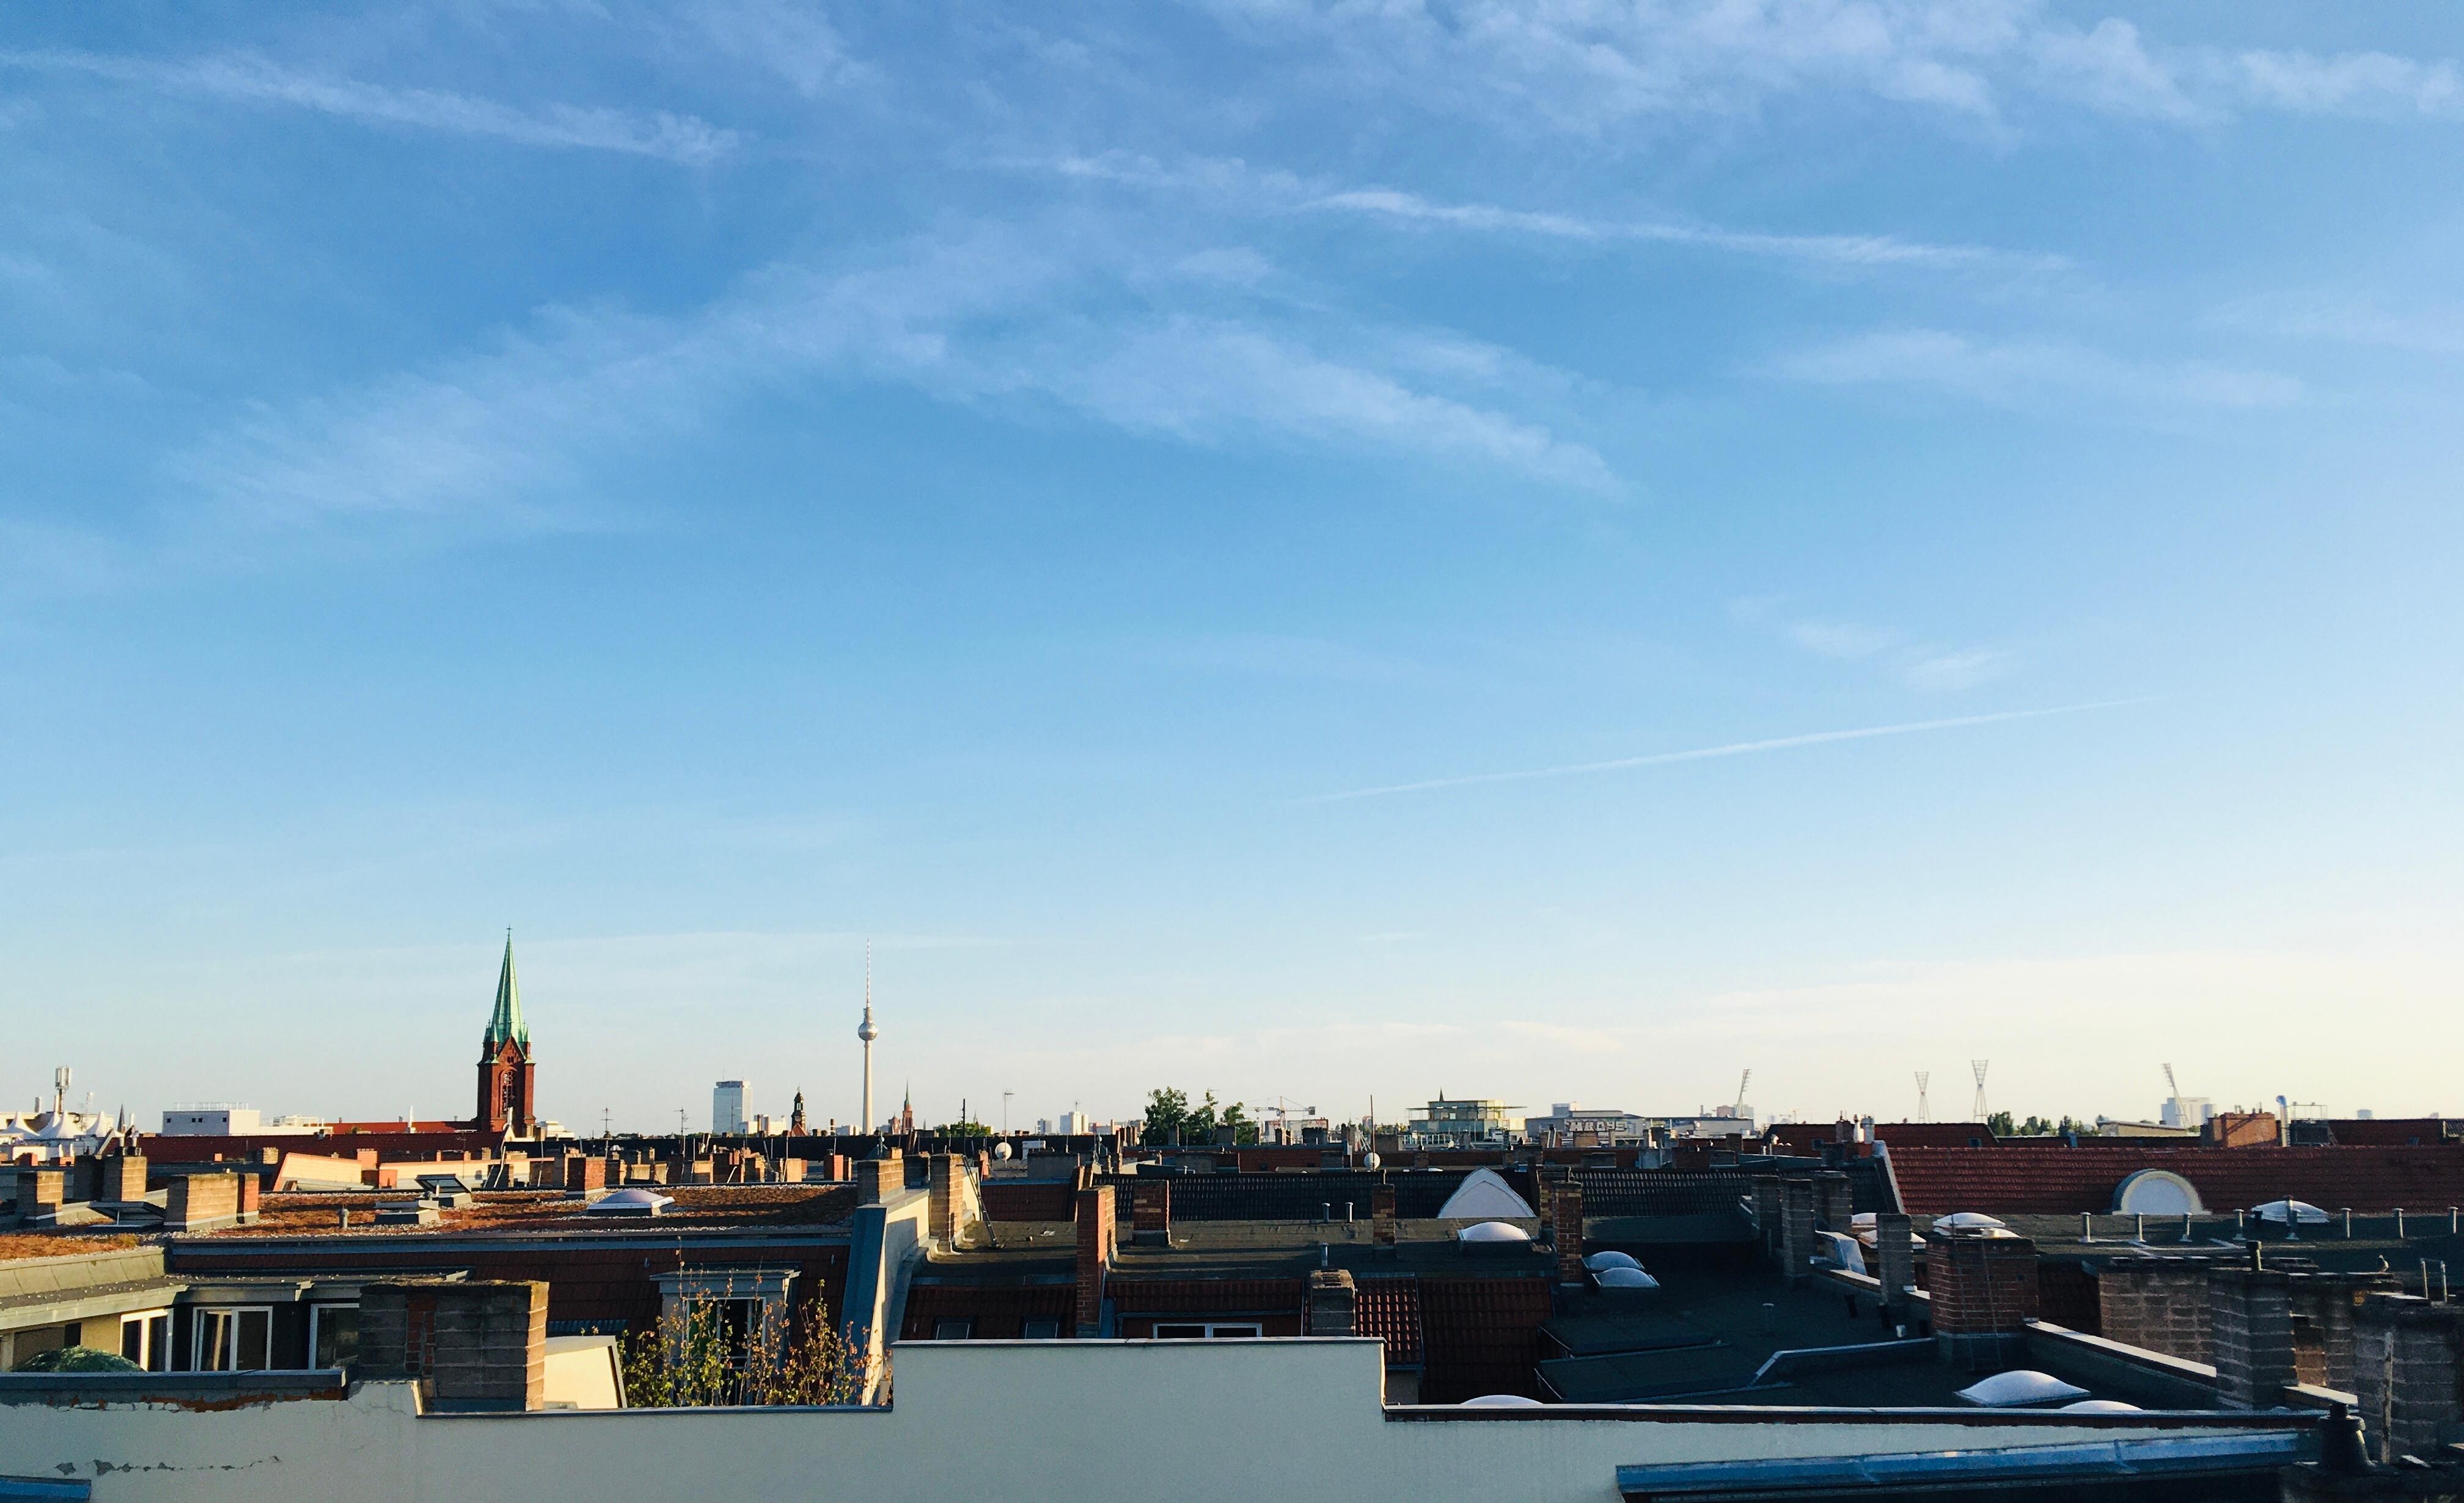 Über den Dächern Berlins ...
#berlin #pankow #dachterasse #afterwork